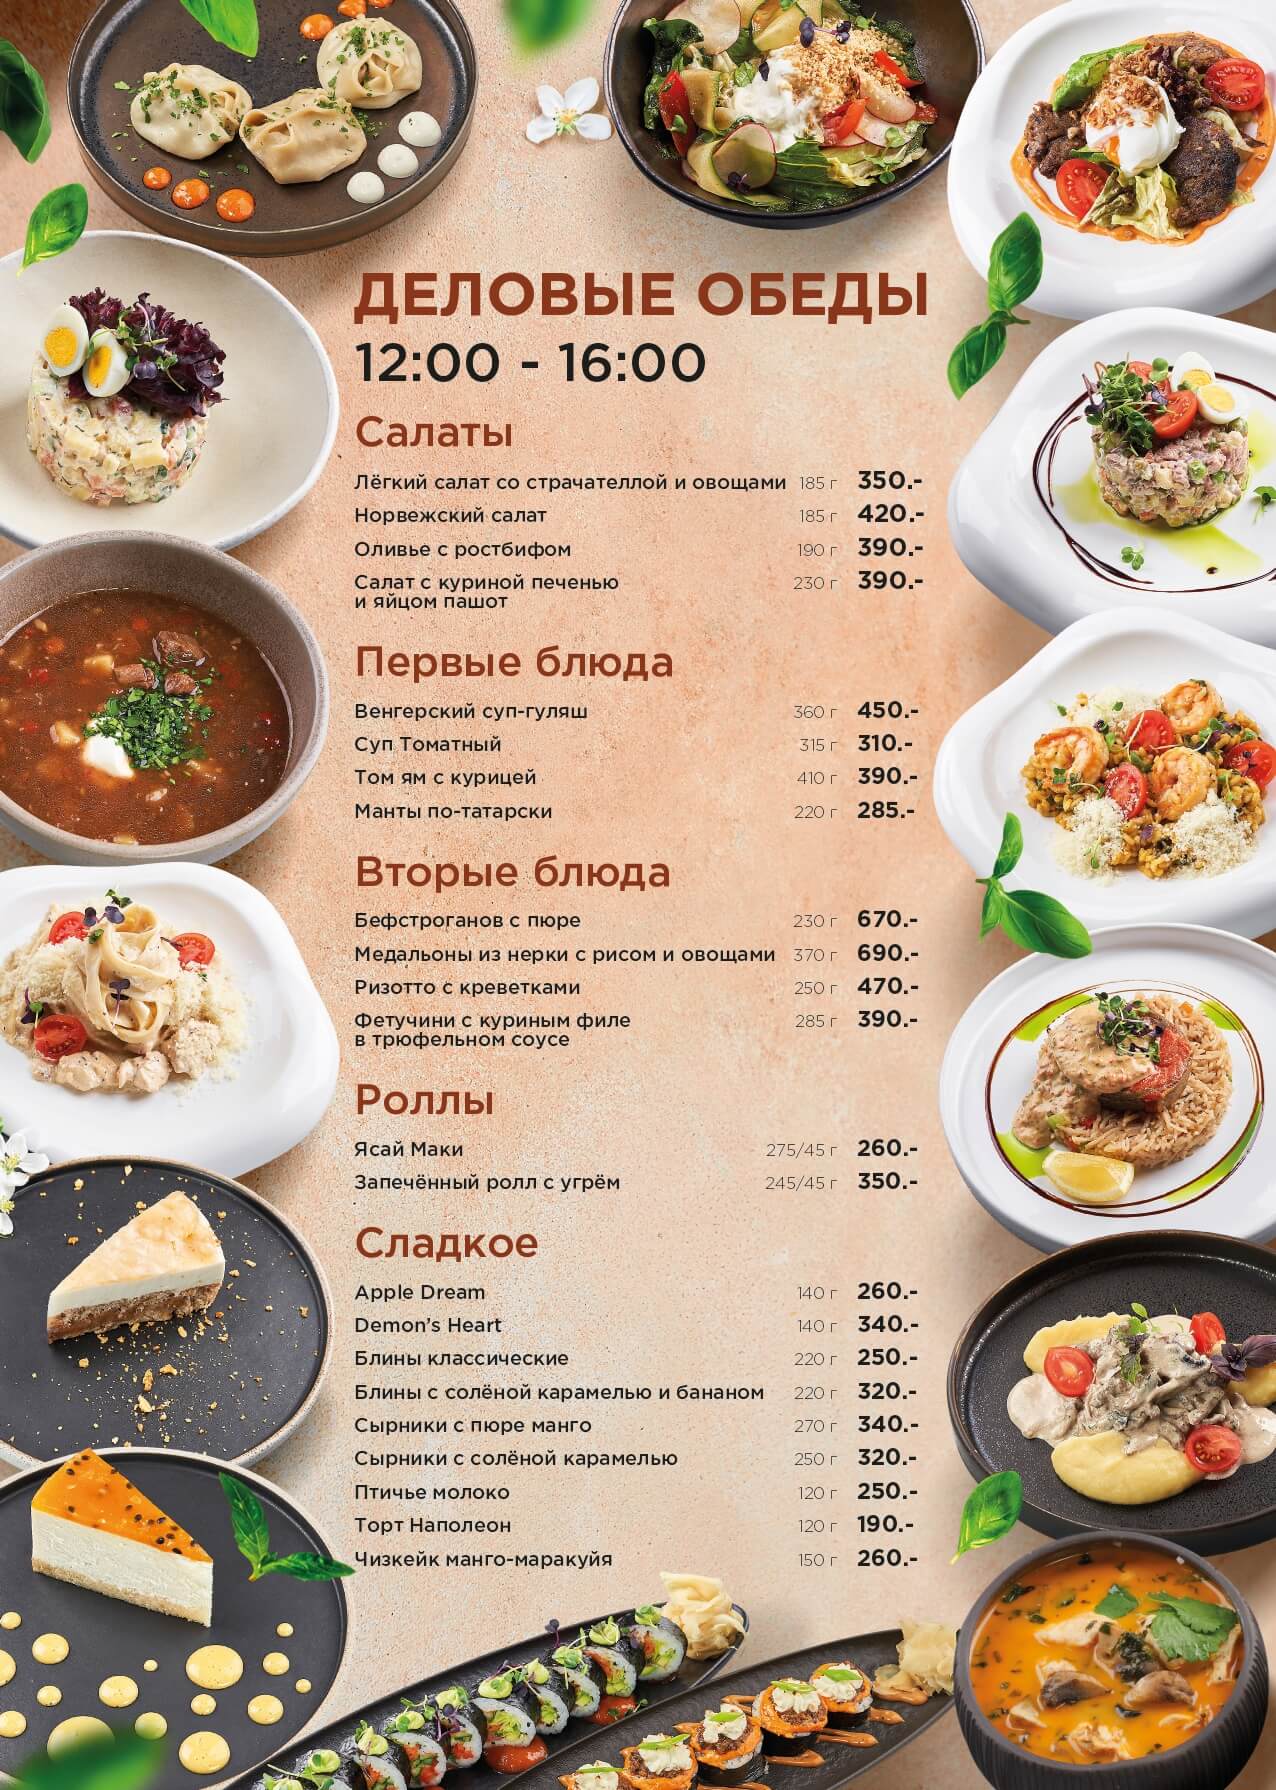 Деловые обеды - delovoj obed a4 vesna 1 page 0002 - Ресторан 1st GALLERY KITCHEN